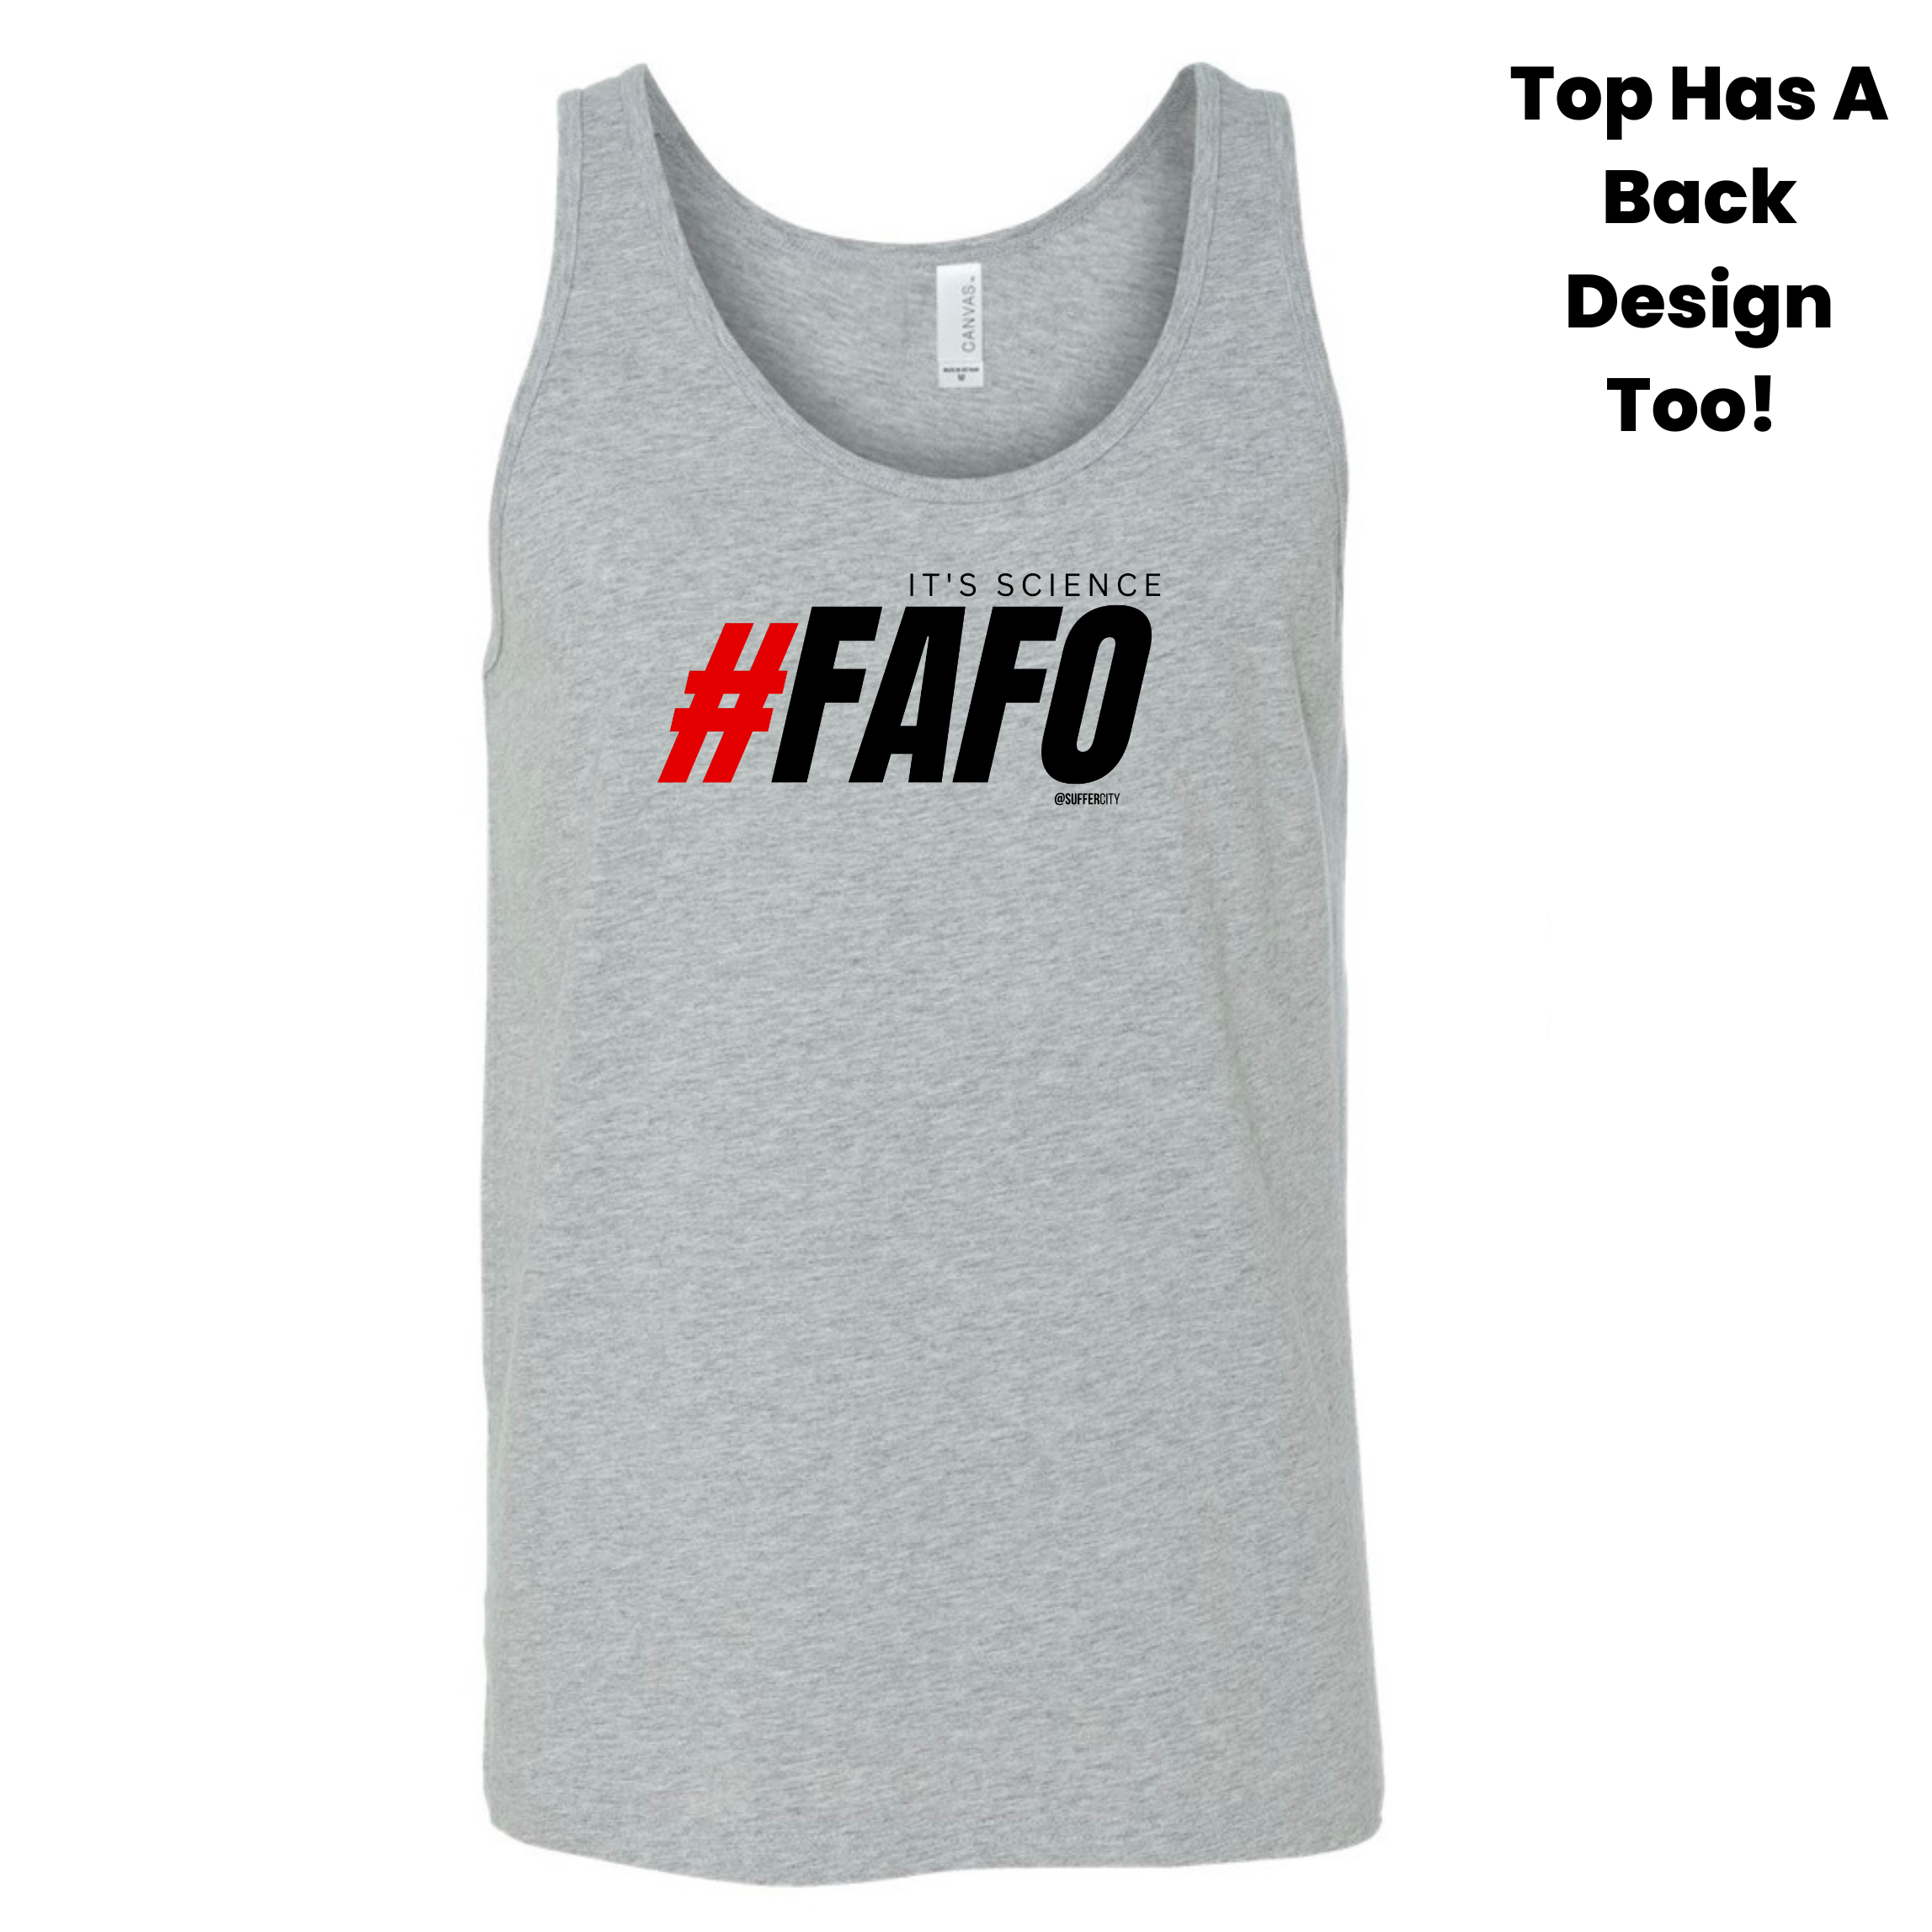 FAFO (Design on Front & Back) - “Cooler" Options